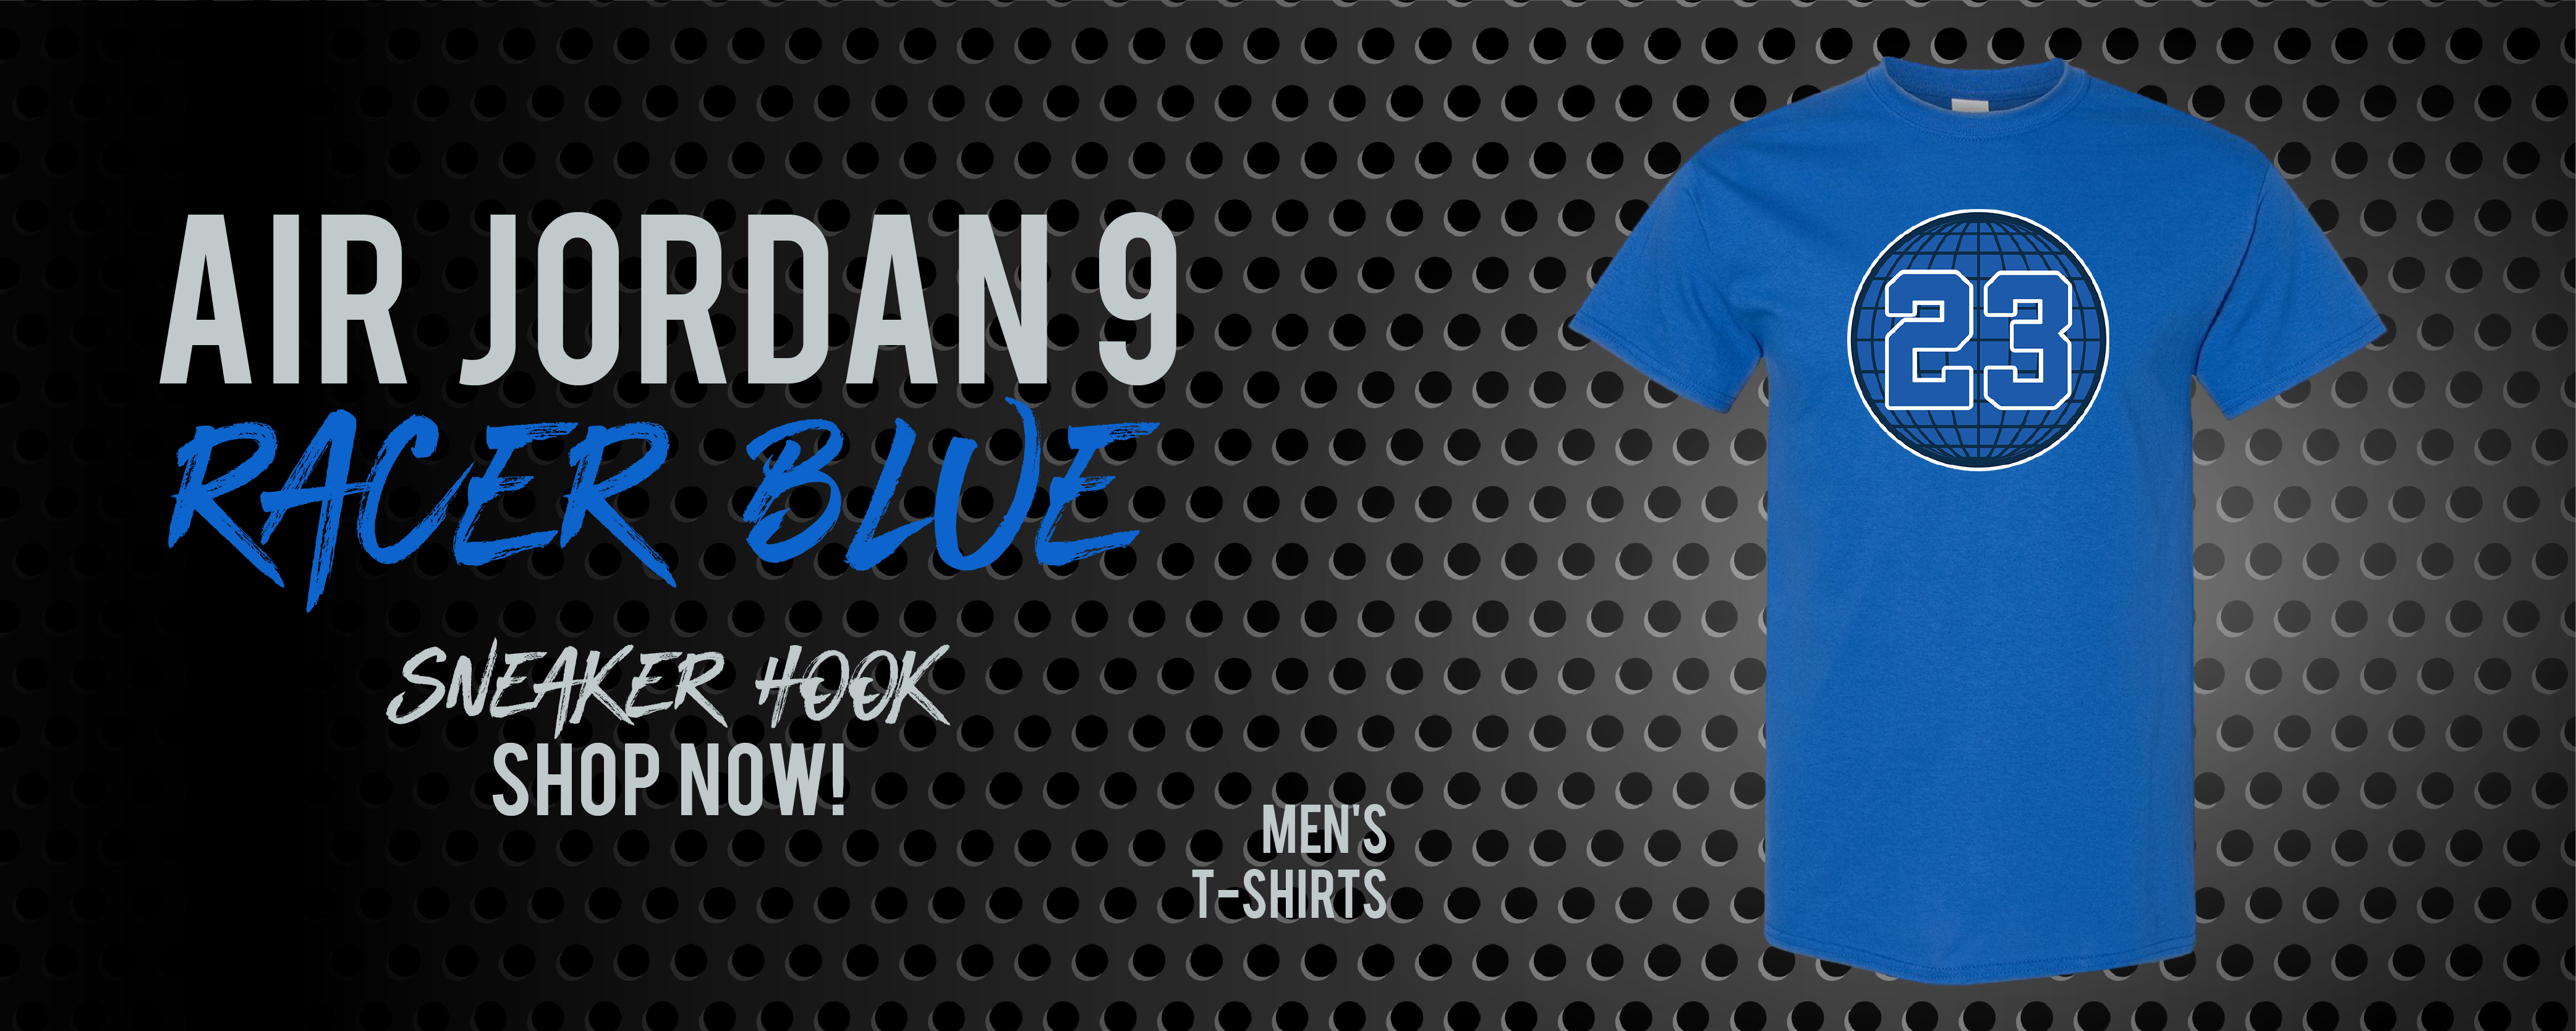 shirt to match jordan 9 racer blue